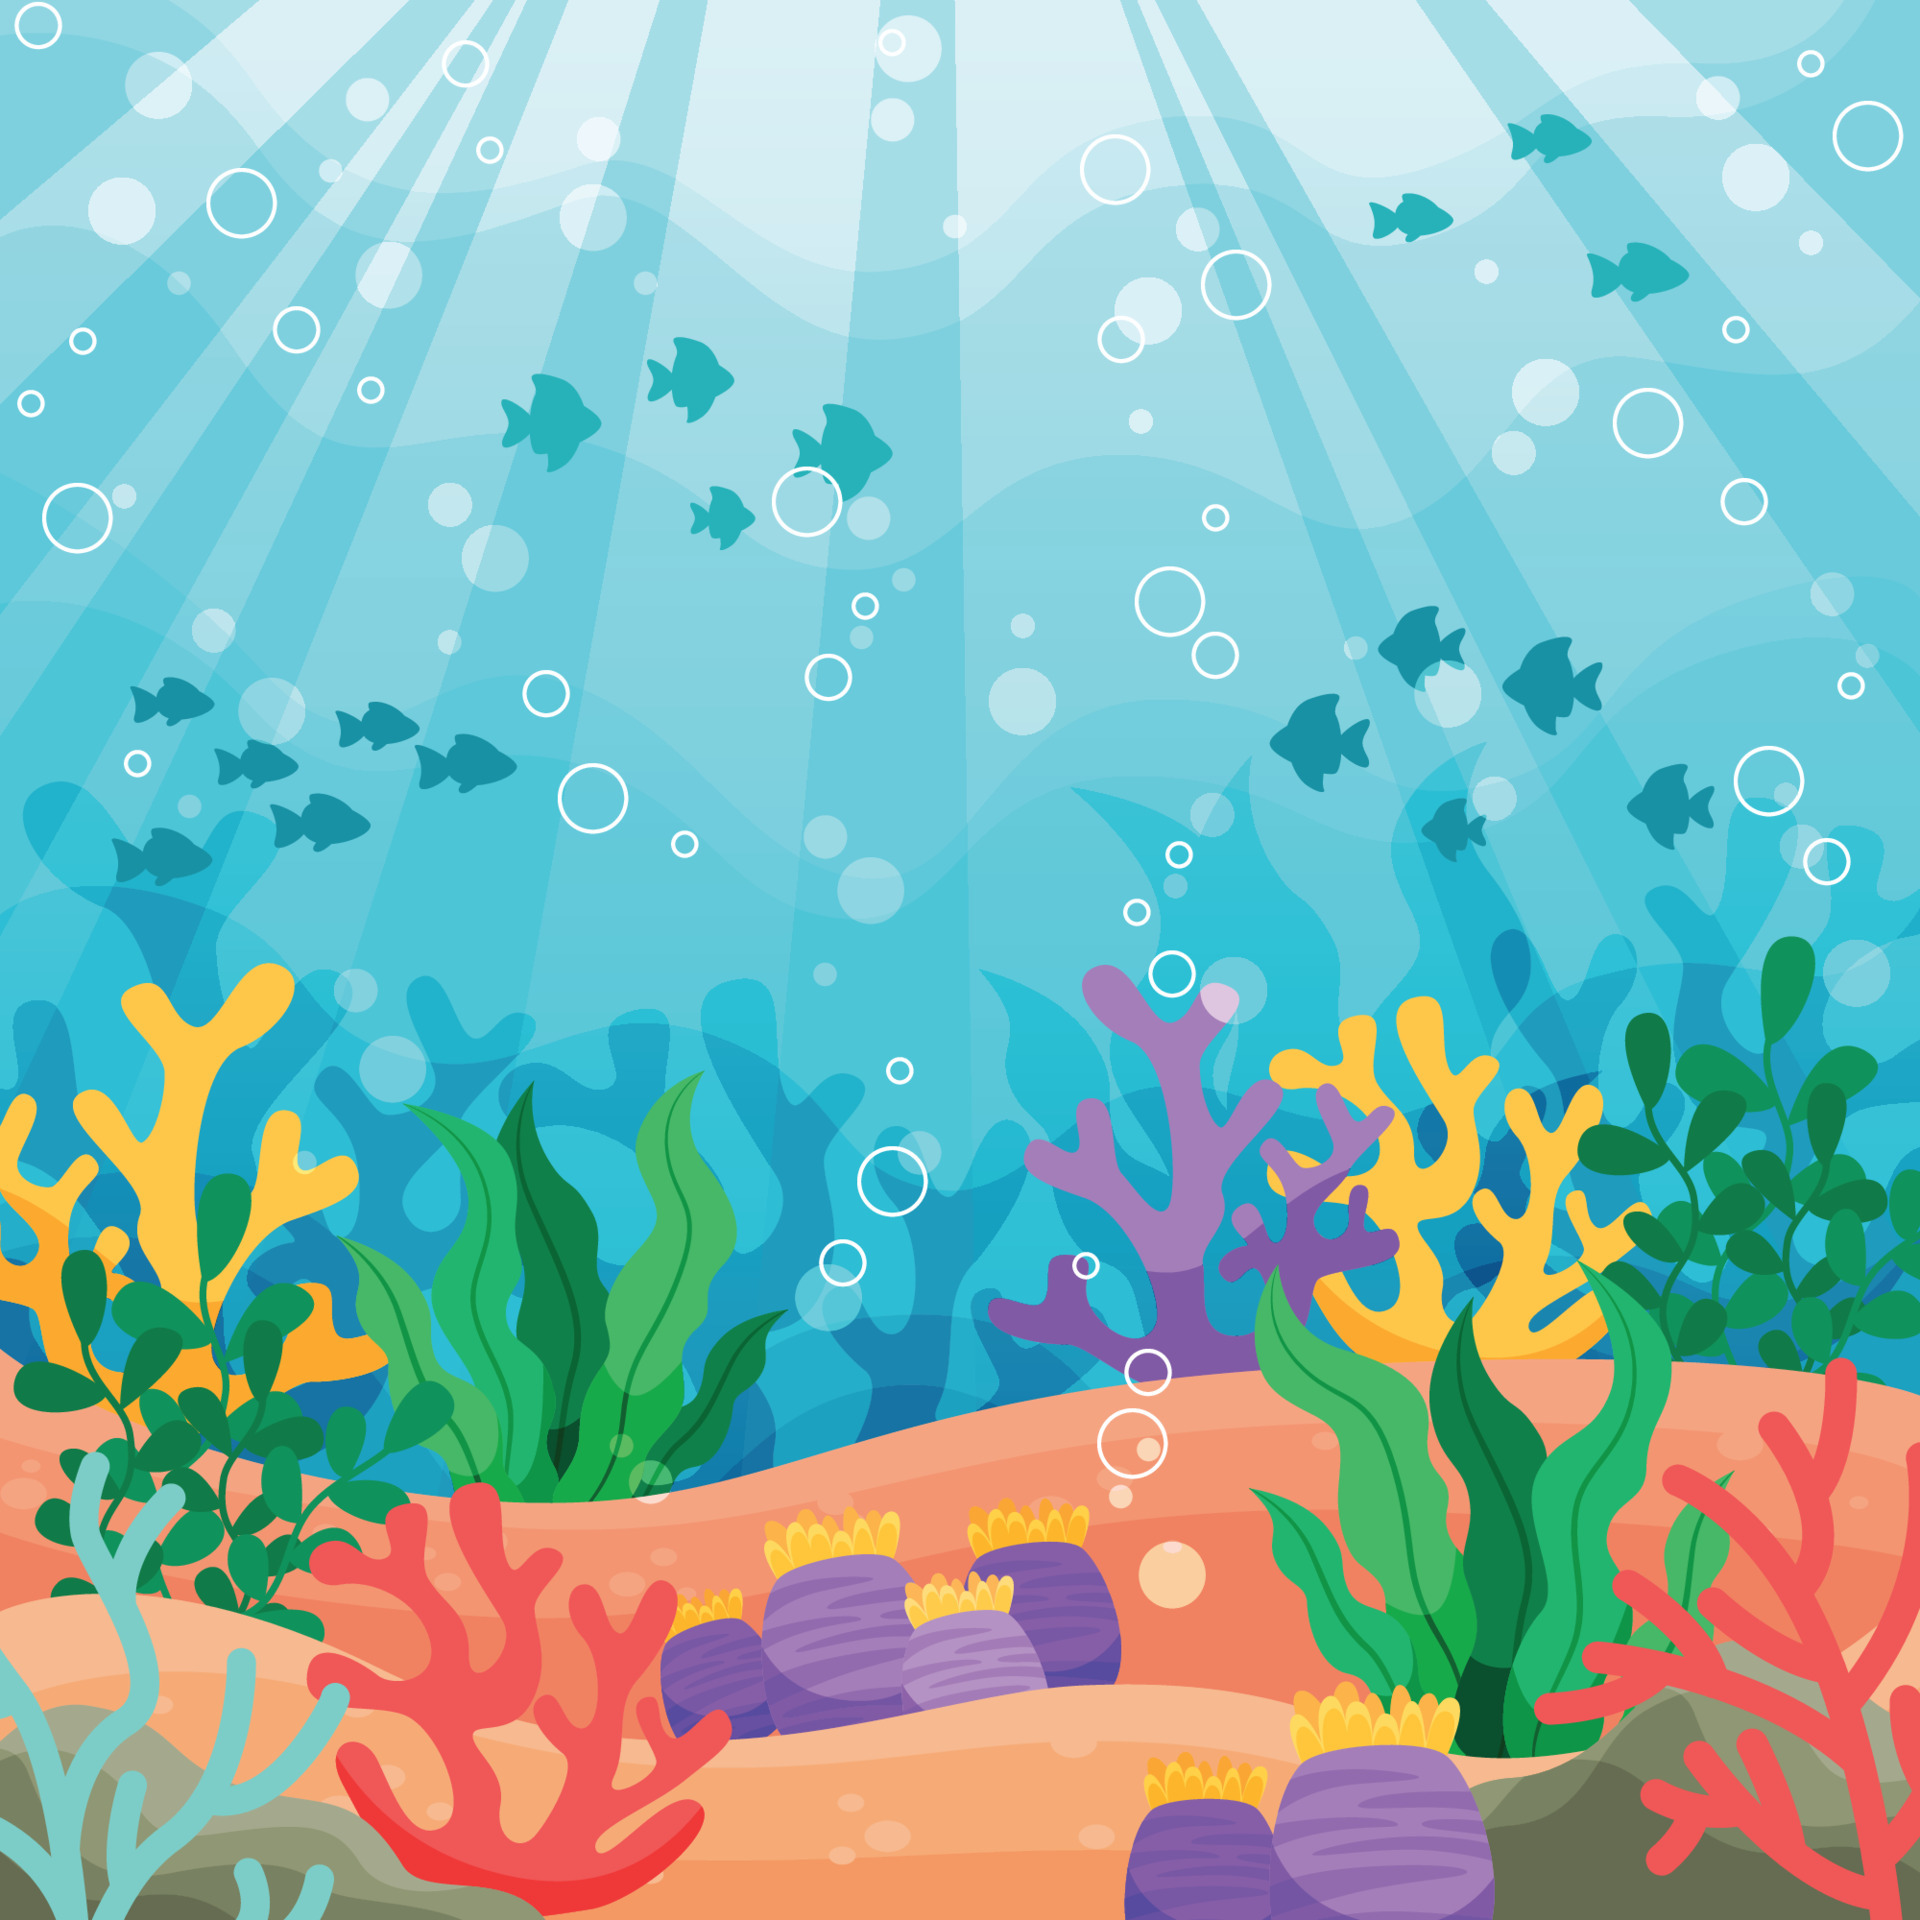 Bạn muốn tạo một hình nền độc đáo cho thiết bị của mình không? Hãy chọn một bức ảnh bể biển tuyệt đẹp với thế giới đầy màu sắc và đa dạng dưới đáy đại dương, bạn sẽ có ngay một hình nền độc đáo và ấn tượng.